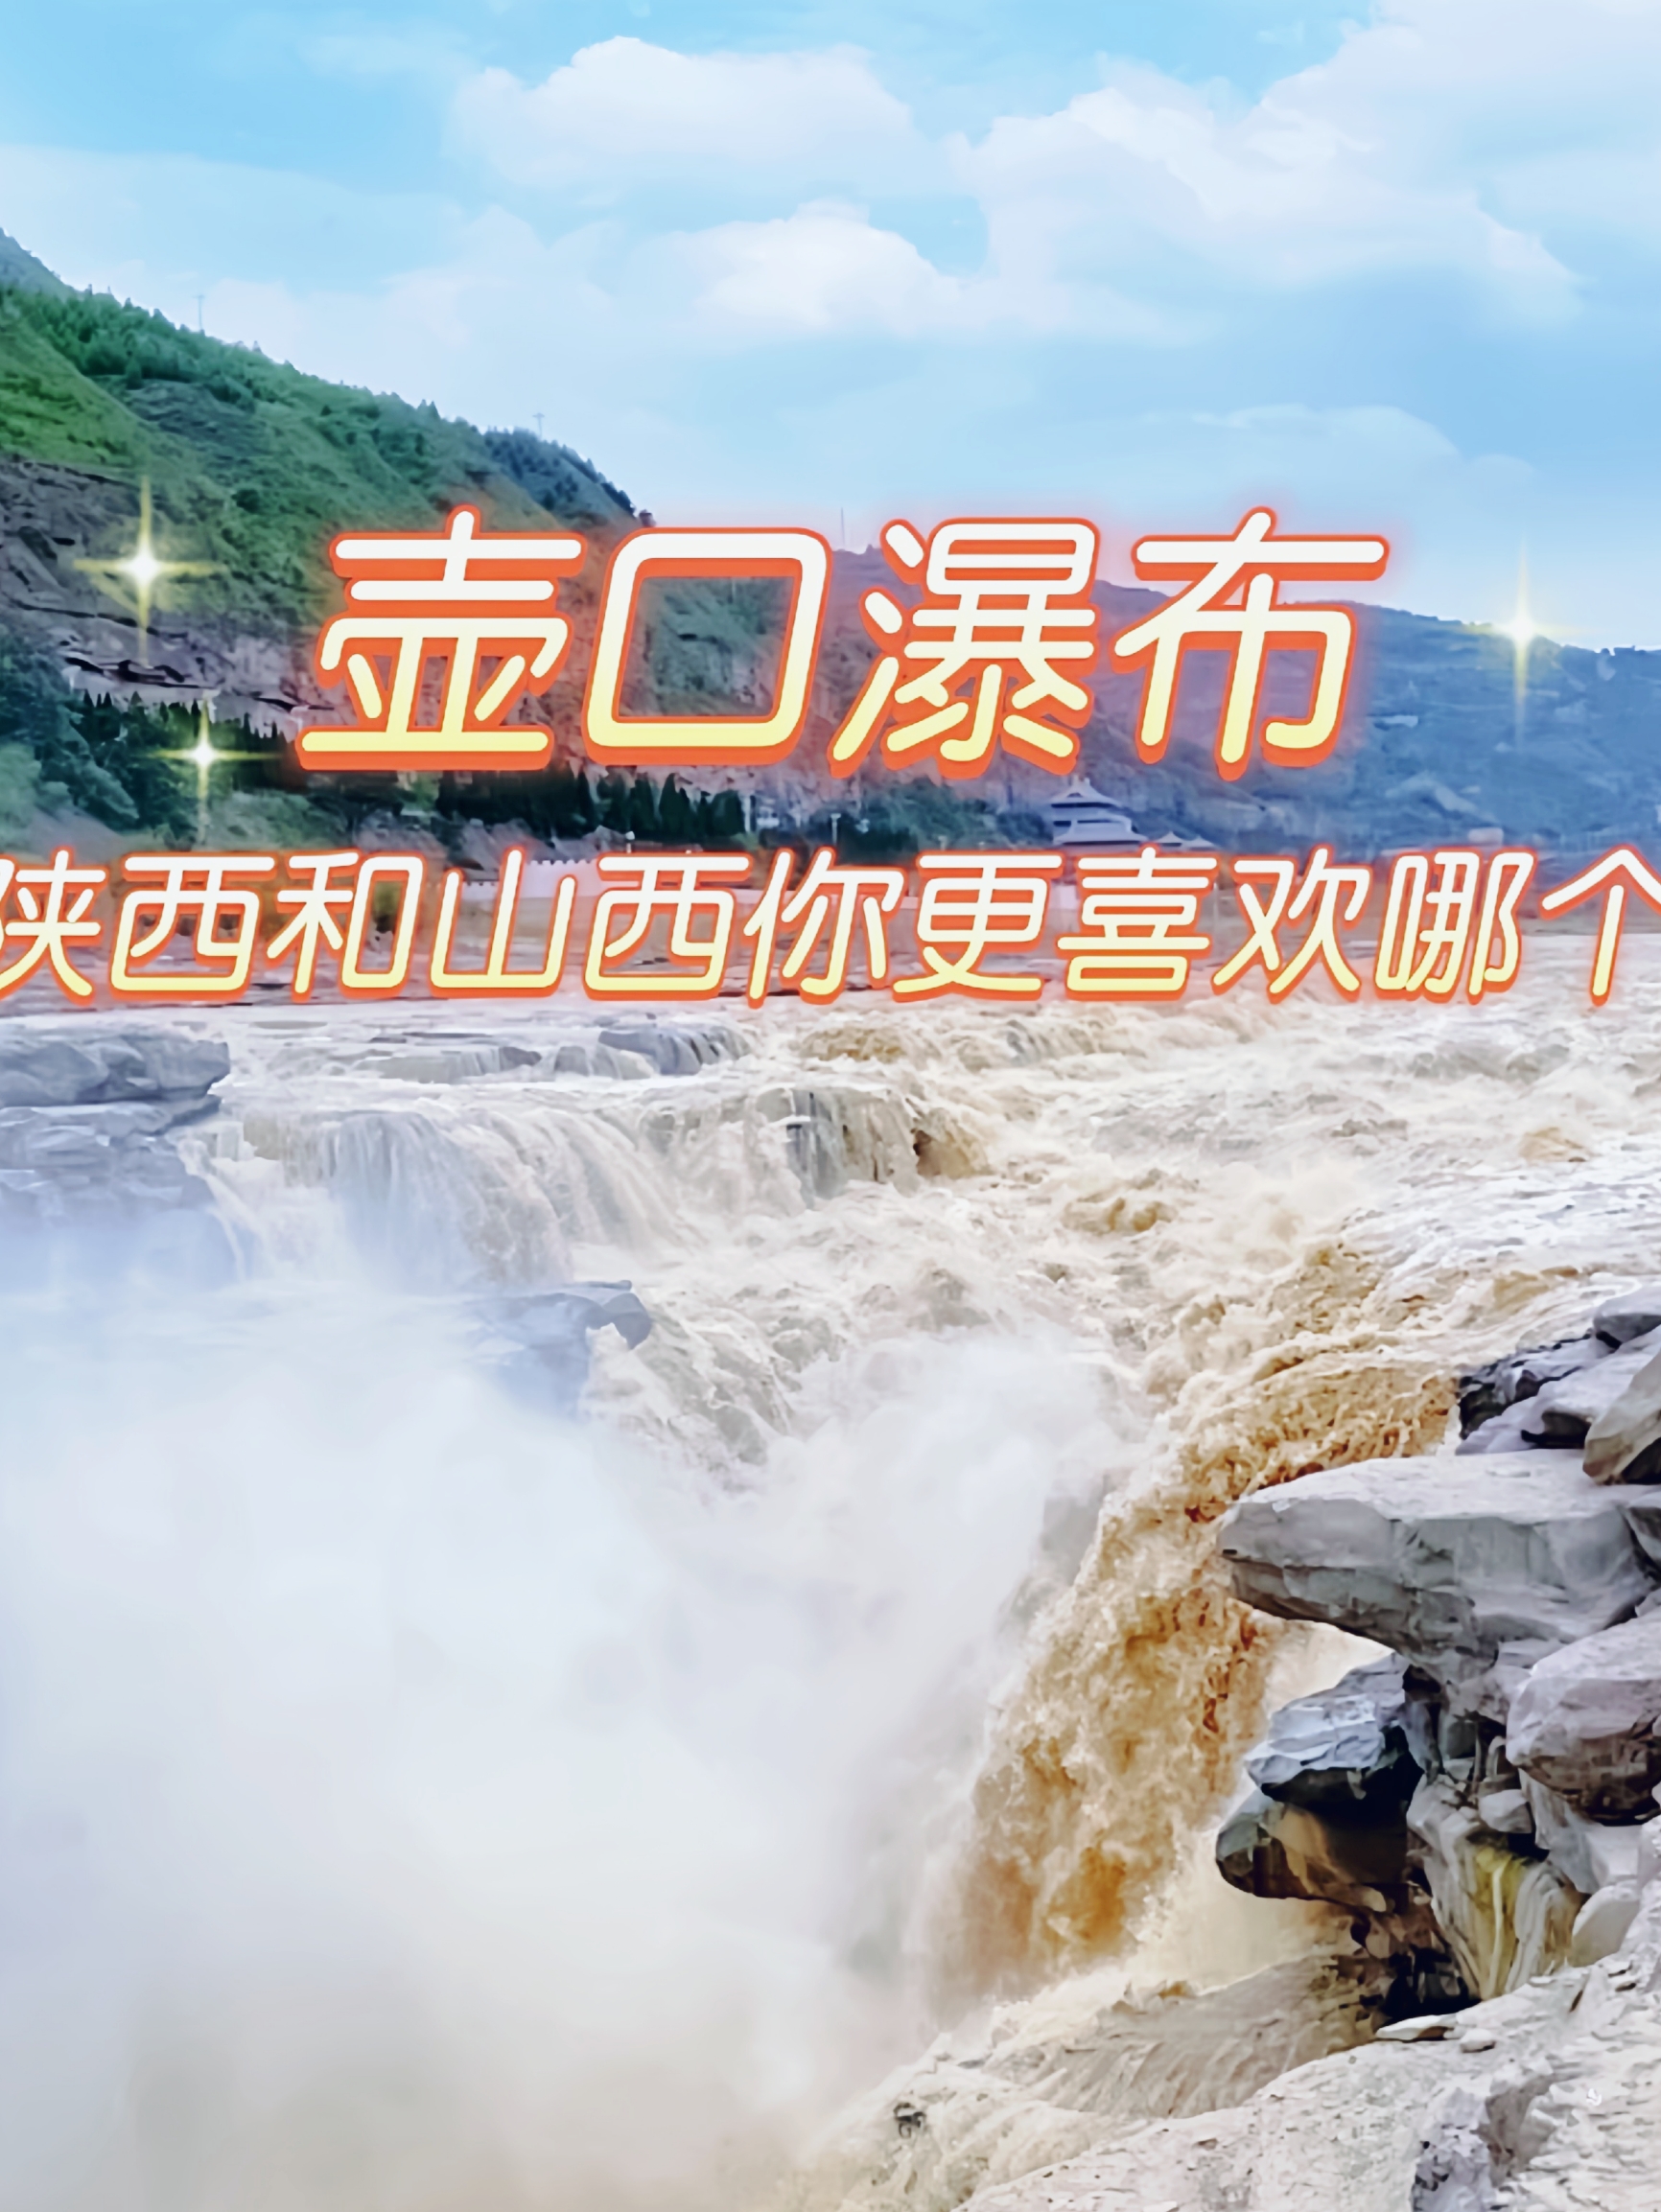 壶口瀑布号称“黄河奇观”，世界上唯一的金黄色瀑布，也是中国的第二大瀑布。景区地处晋陕大峡谷中段，两岸